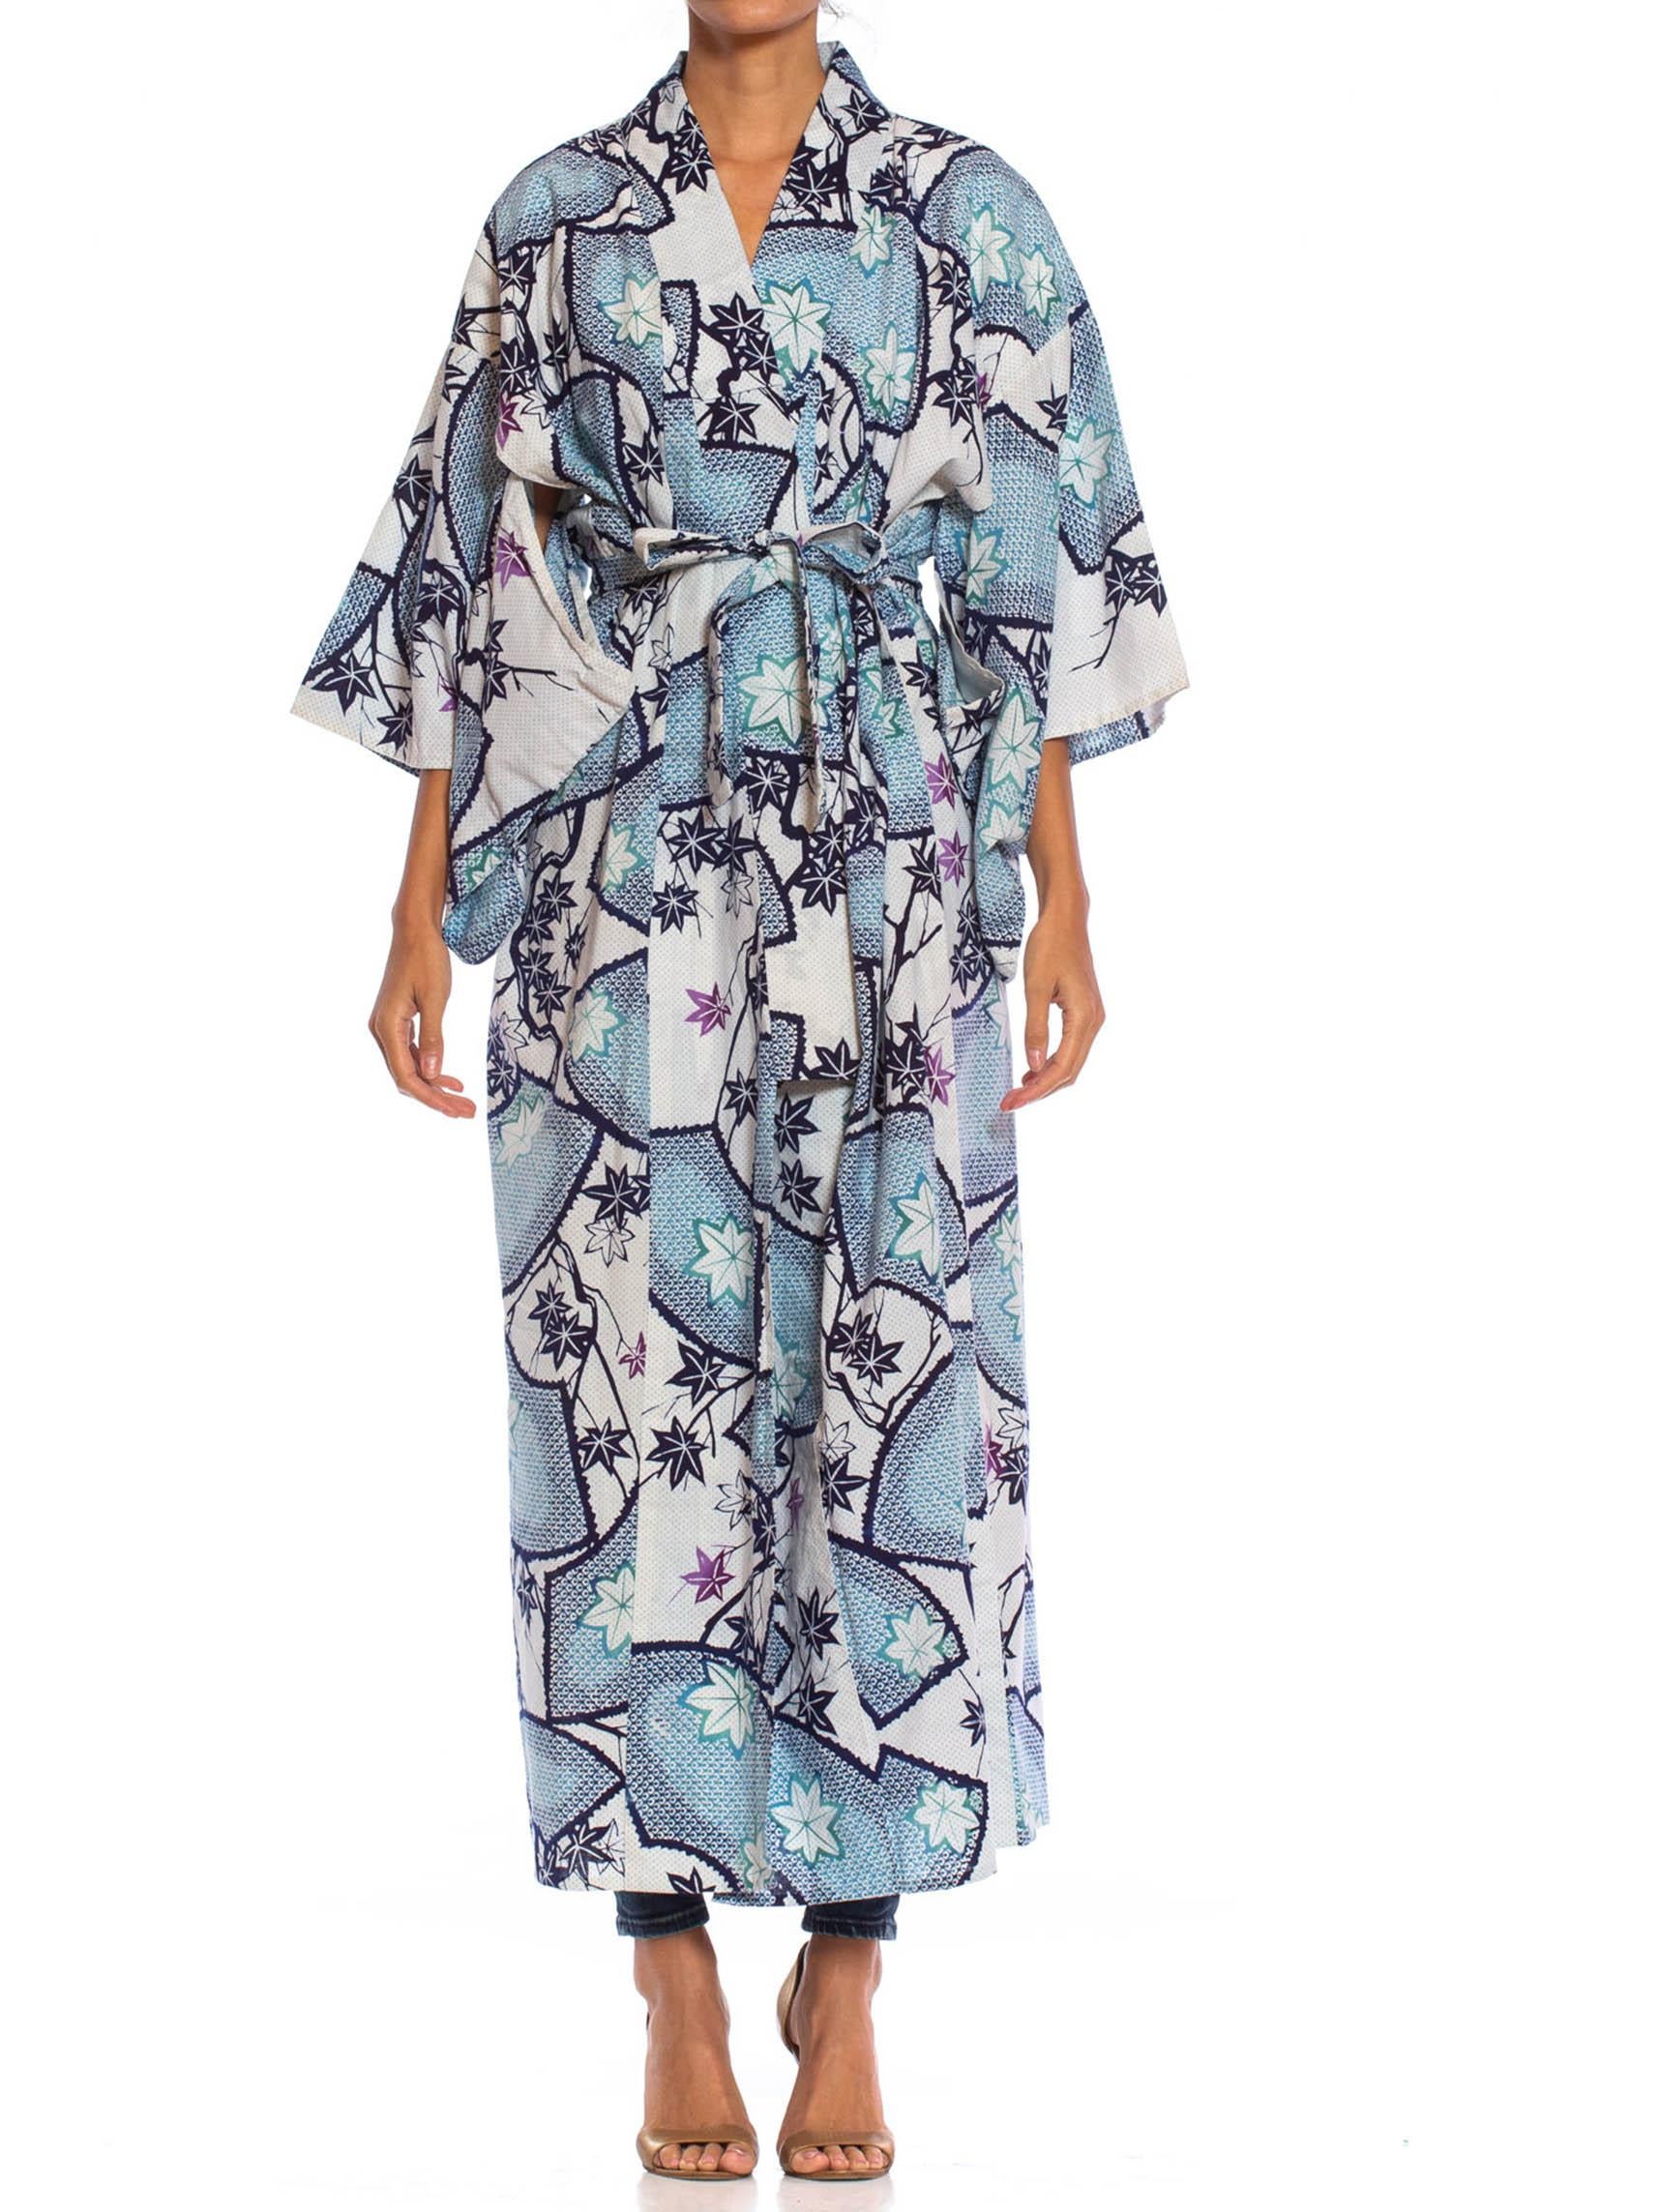 1980S Blau & Weiß Baumwolle Japanisch Ahornblatt Shibori Druck Kimono Robe Schärpe